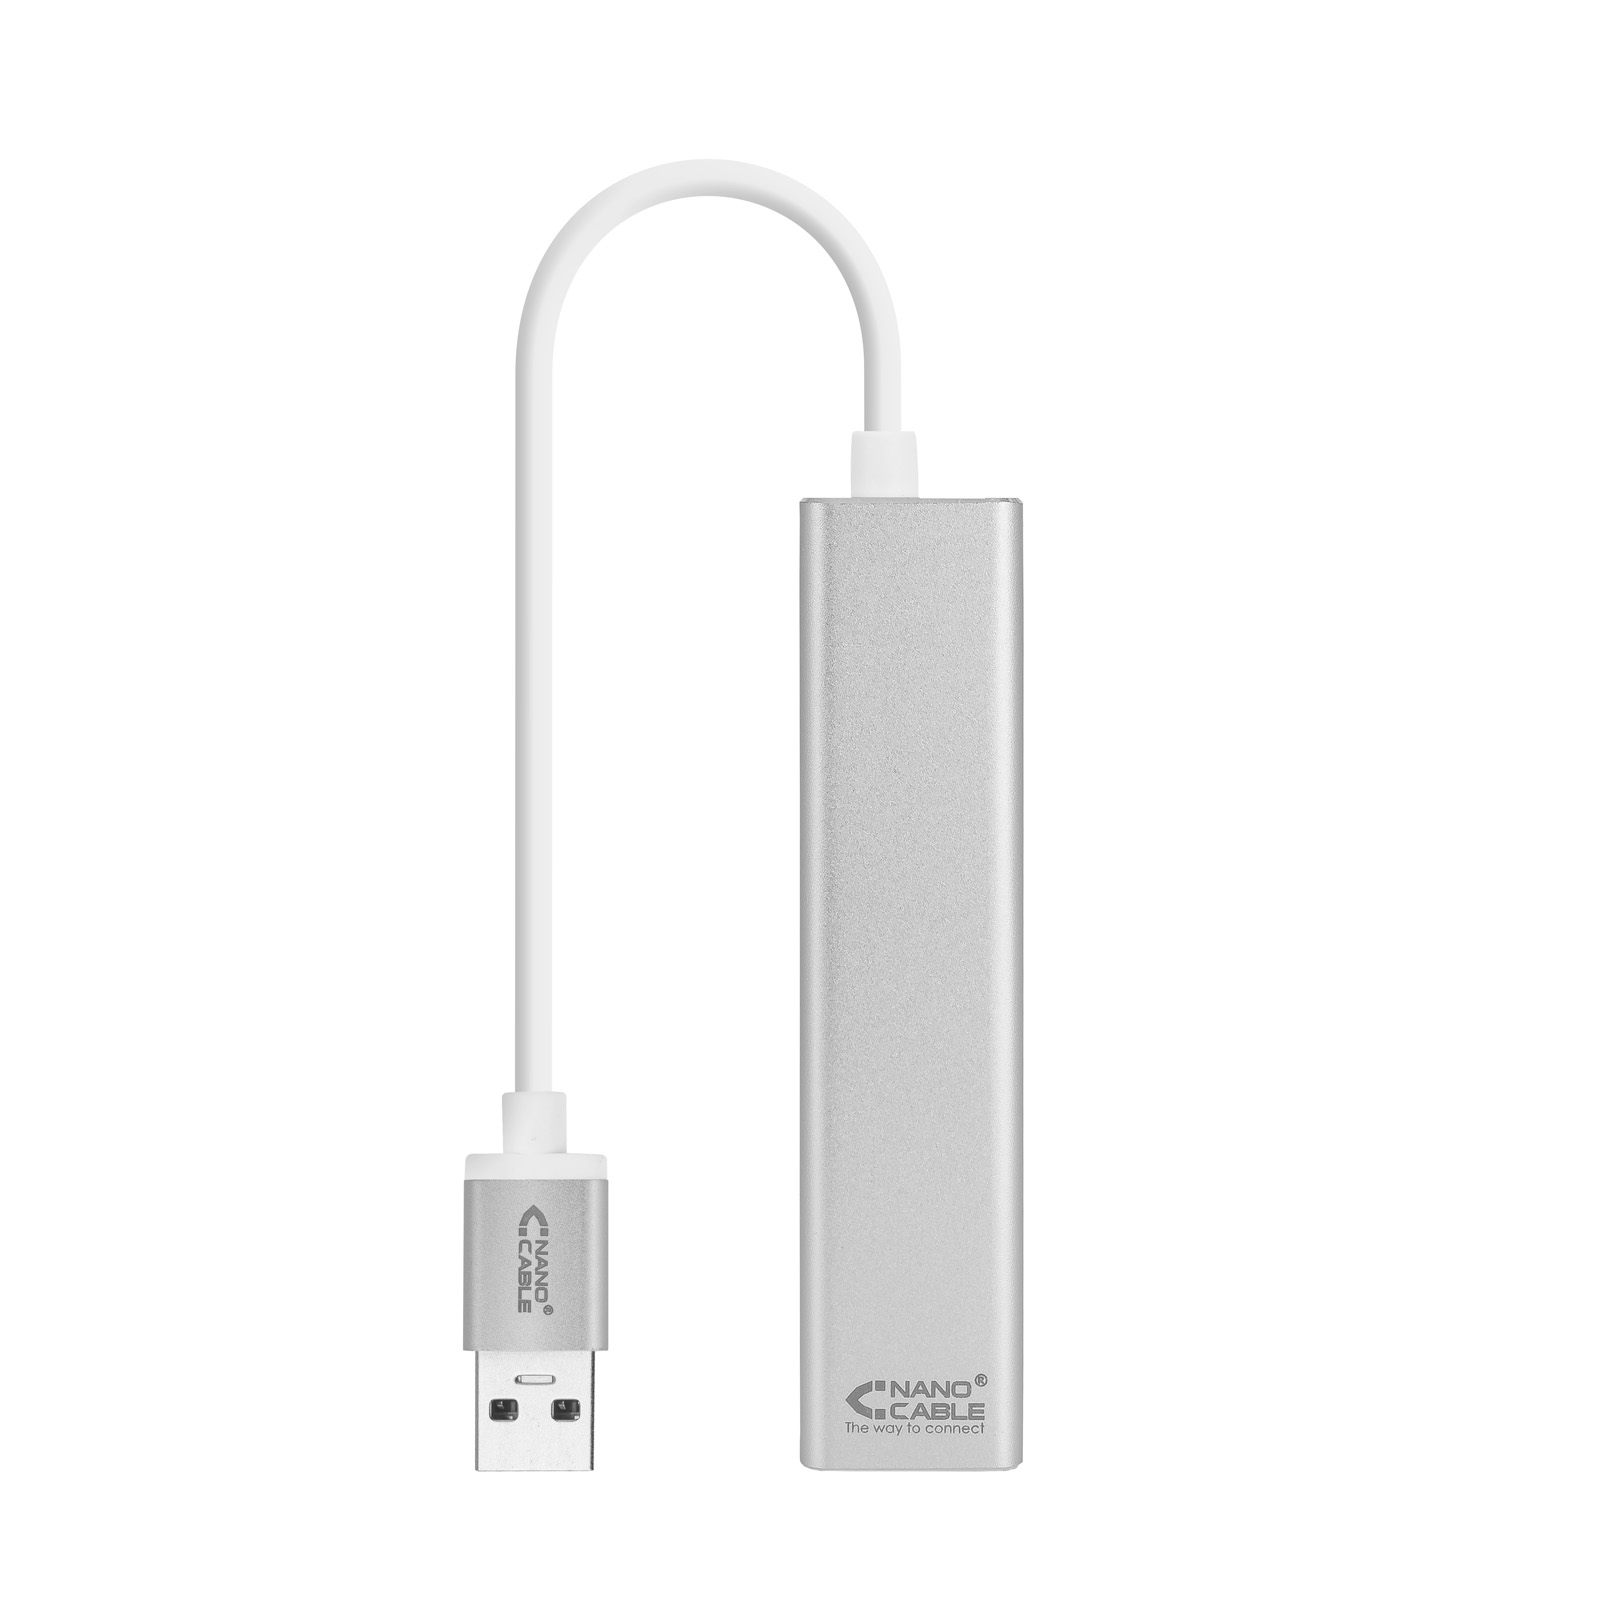 Convertisseur Nanocâble USB 3.0 vers Gigabit Ethernet + 3xUSB 3.0 - Aluminium - 15 cm - Couleur Argent